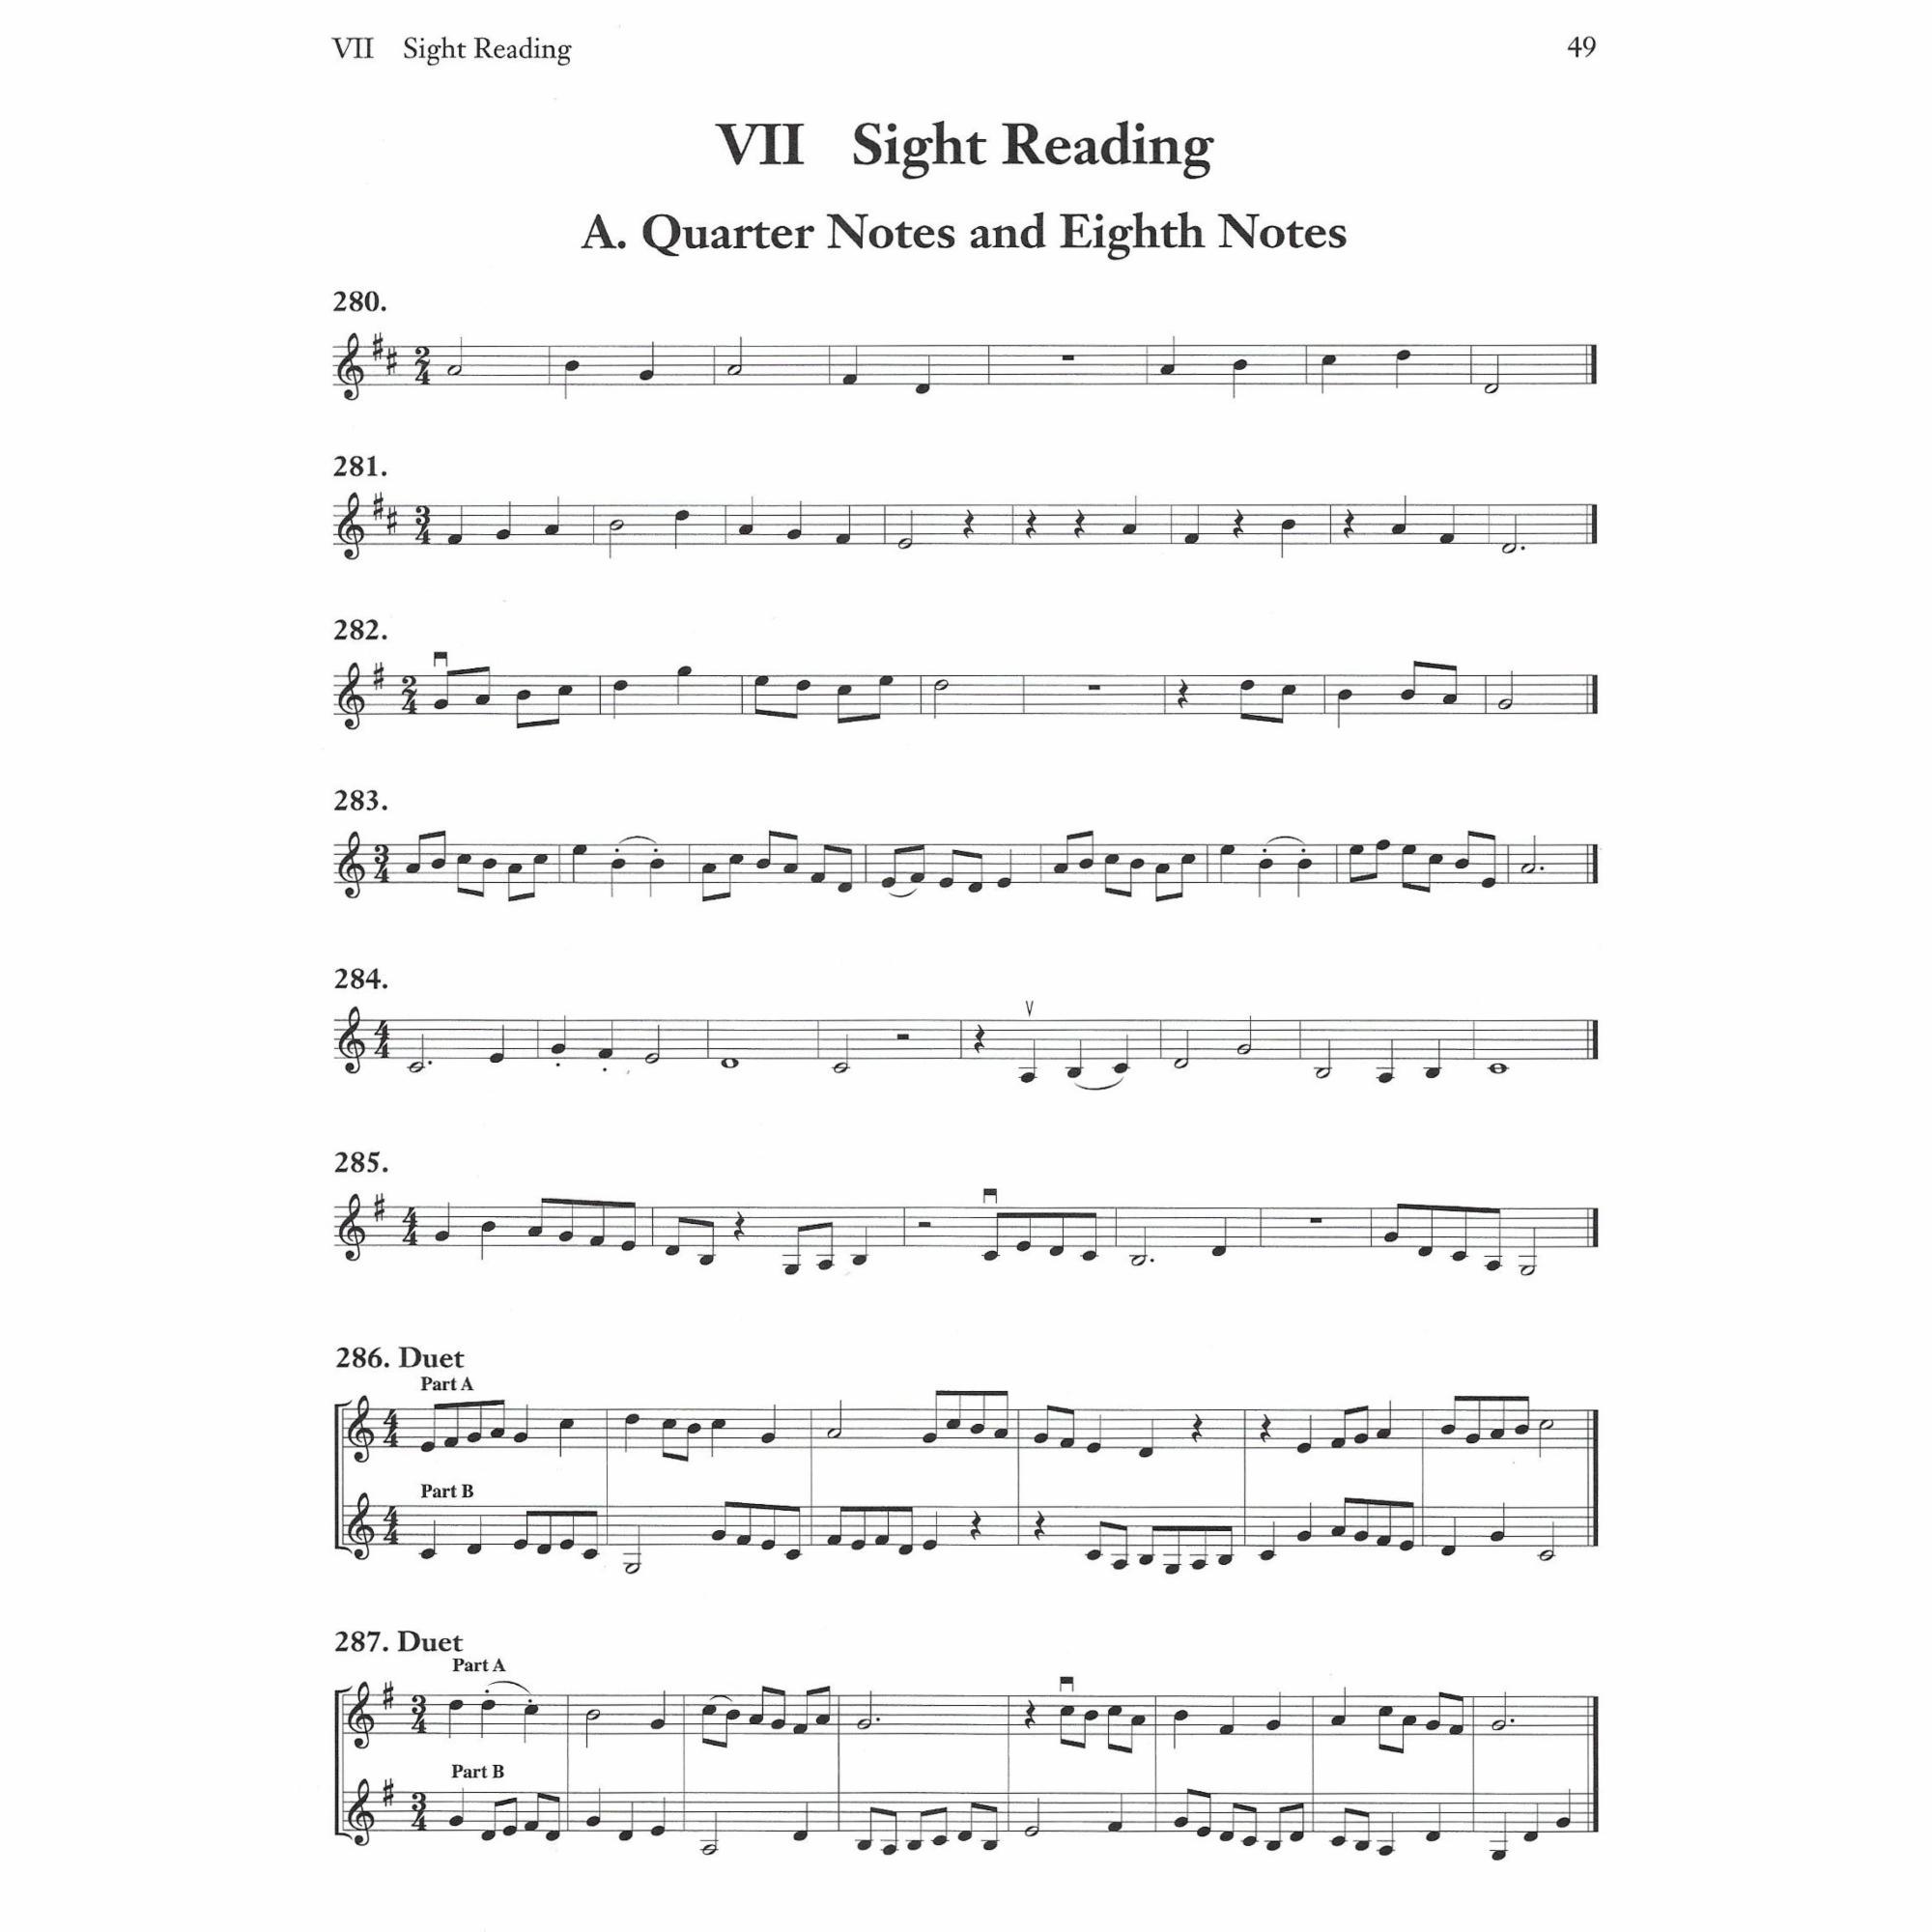 Sample: Violin (Pg. 49)